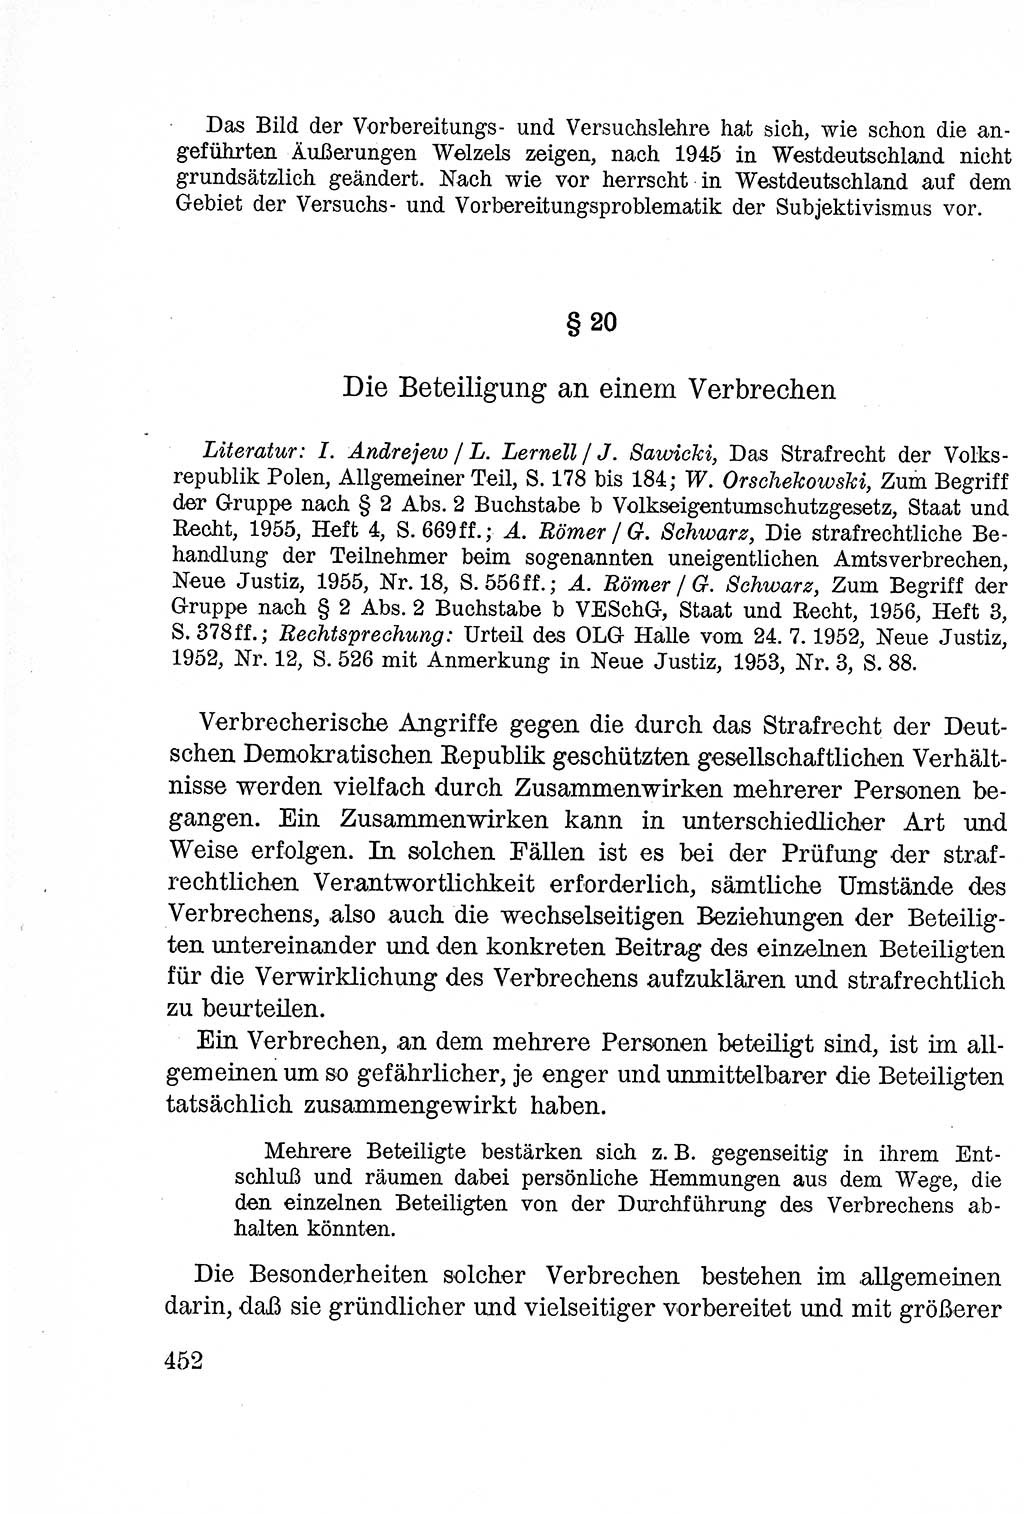 Lehrbuch des Strafrechts der Deutschen Demokratischen Republik (DDR), Allgemeiner Teil 1957, Seite 452 (Lb. Strafr. DDR AT 1957, S. 452)